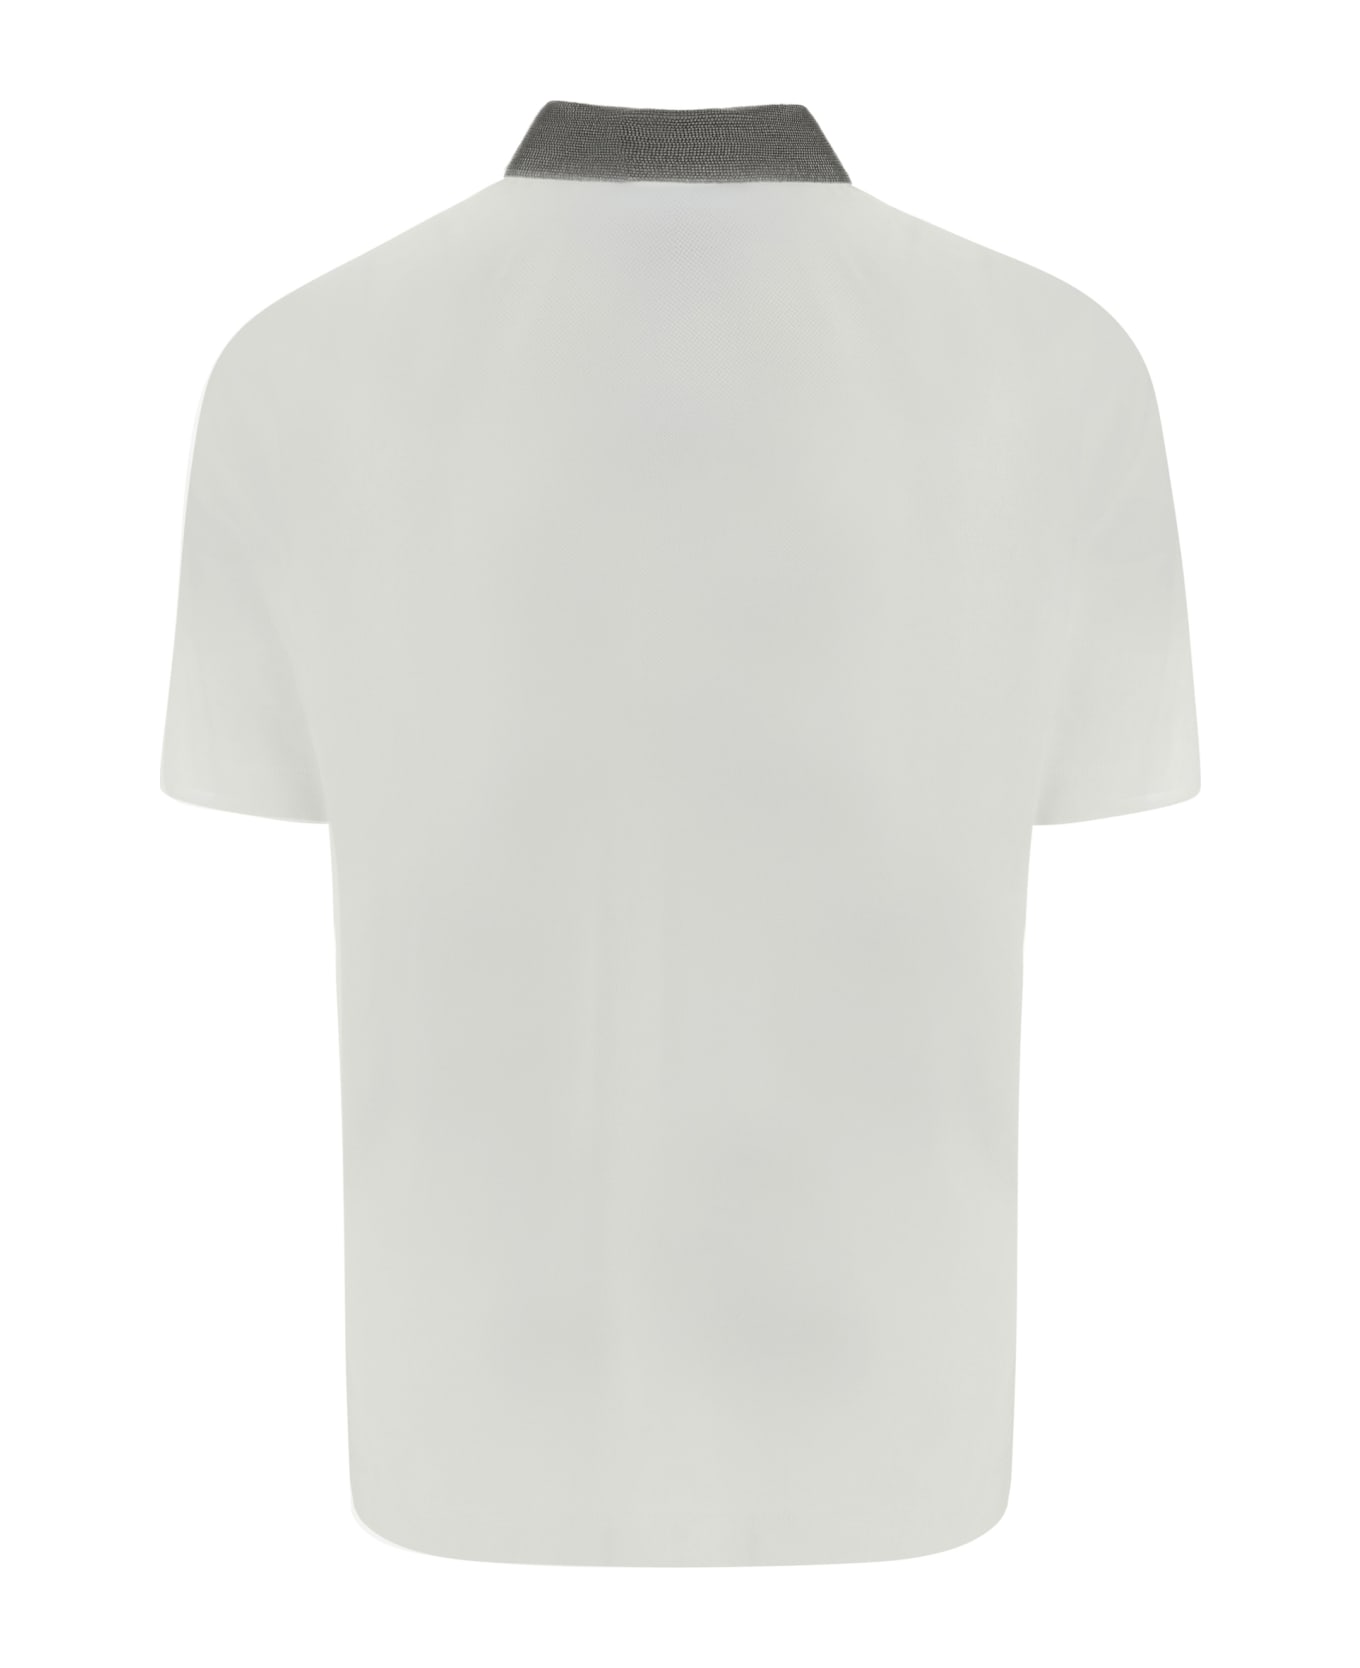 Brunello Cucinelli Polo Shirt - White